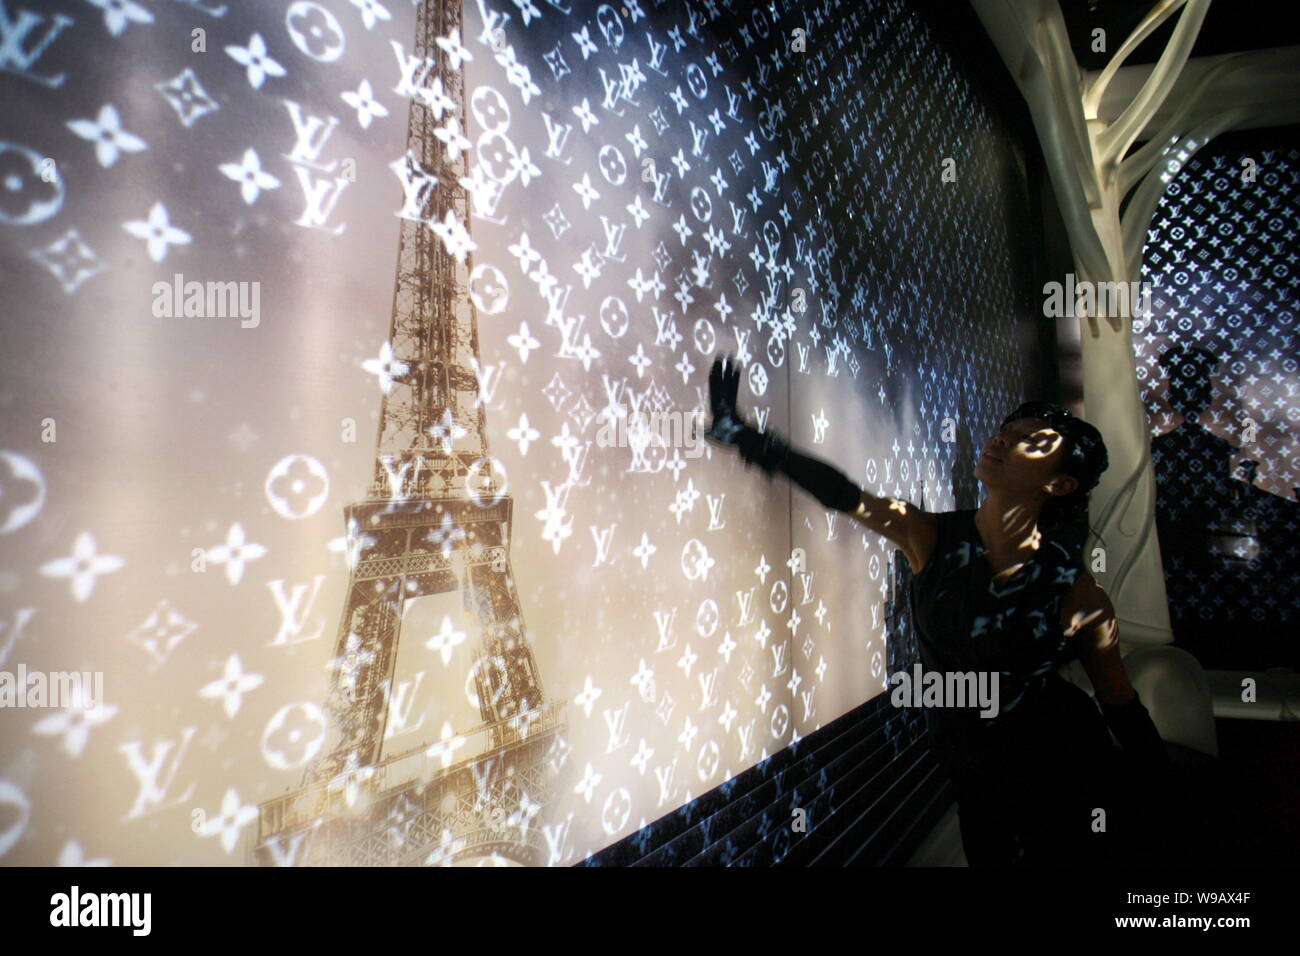 Ein Modell steht vor einer Wand auf, die Louis Vuitton logos während einer  Ausstellung im französischen Pavillon auf der Expo in Shanghai projiziert  werden Stockfotografie - Alamy